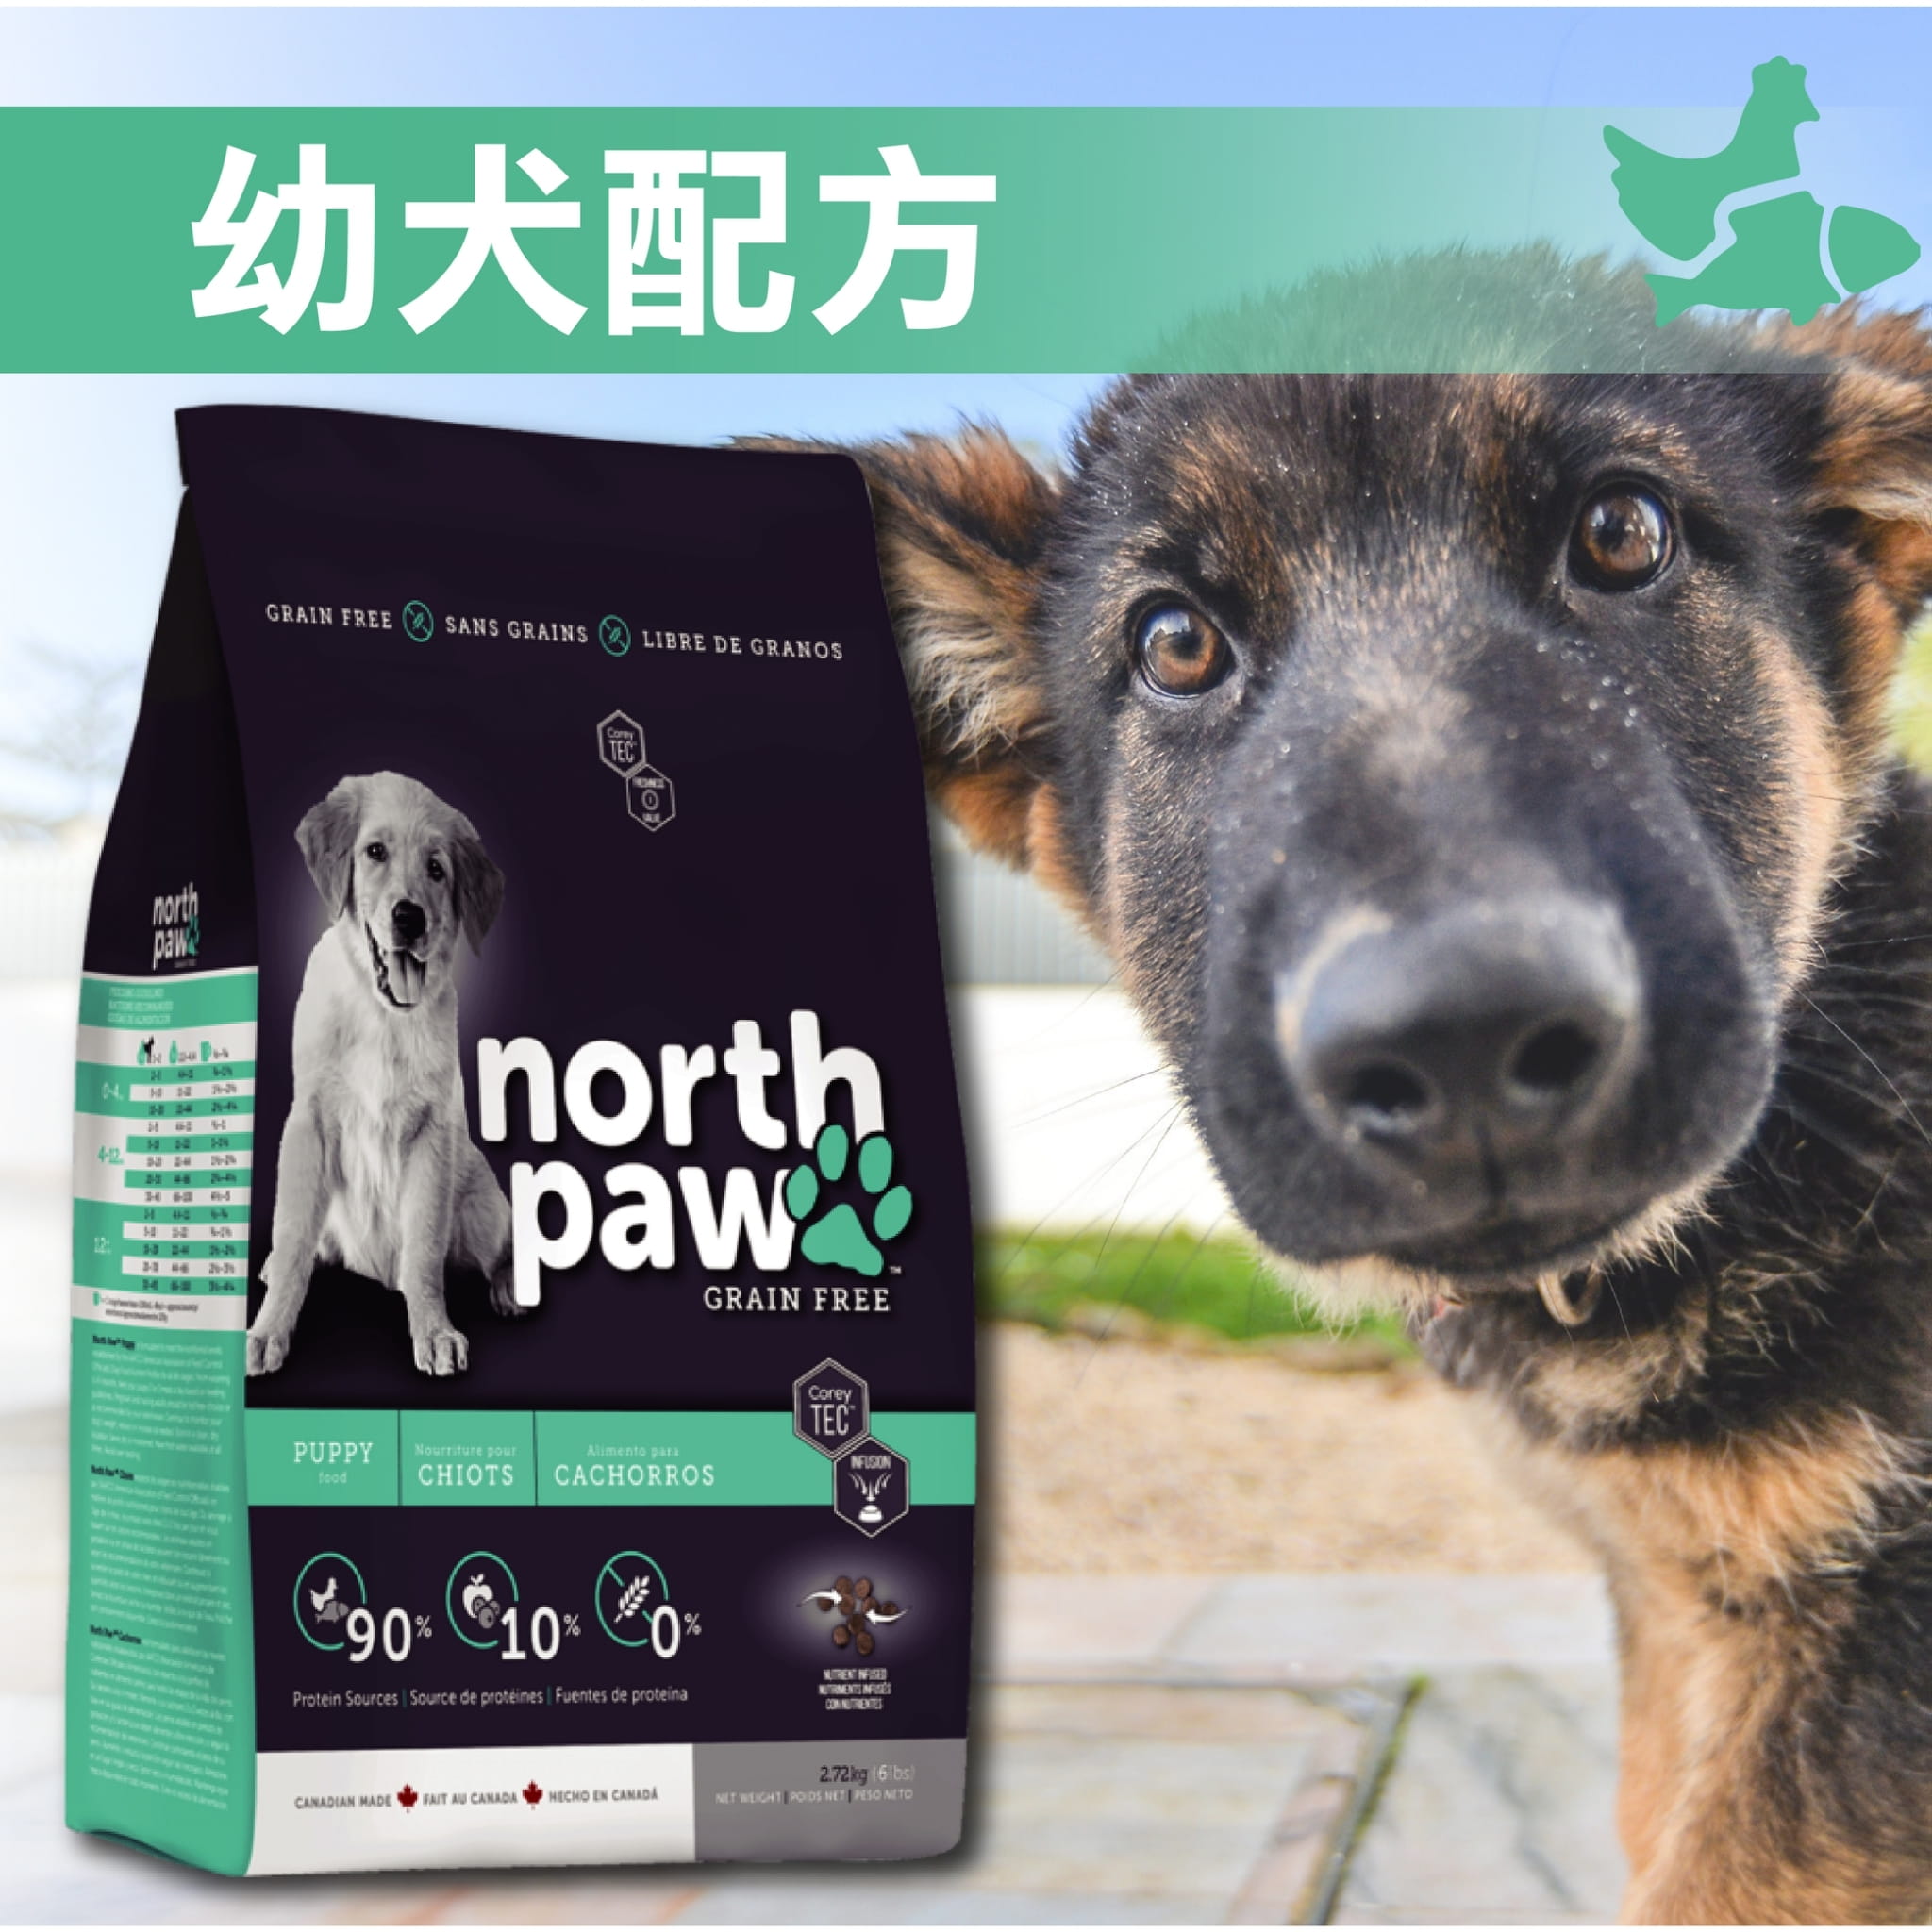 【野牧鮮食northpaw】幼犬配方飼料1kg